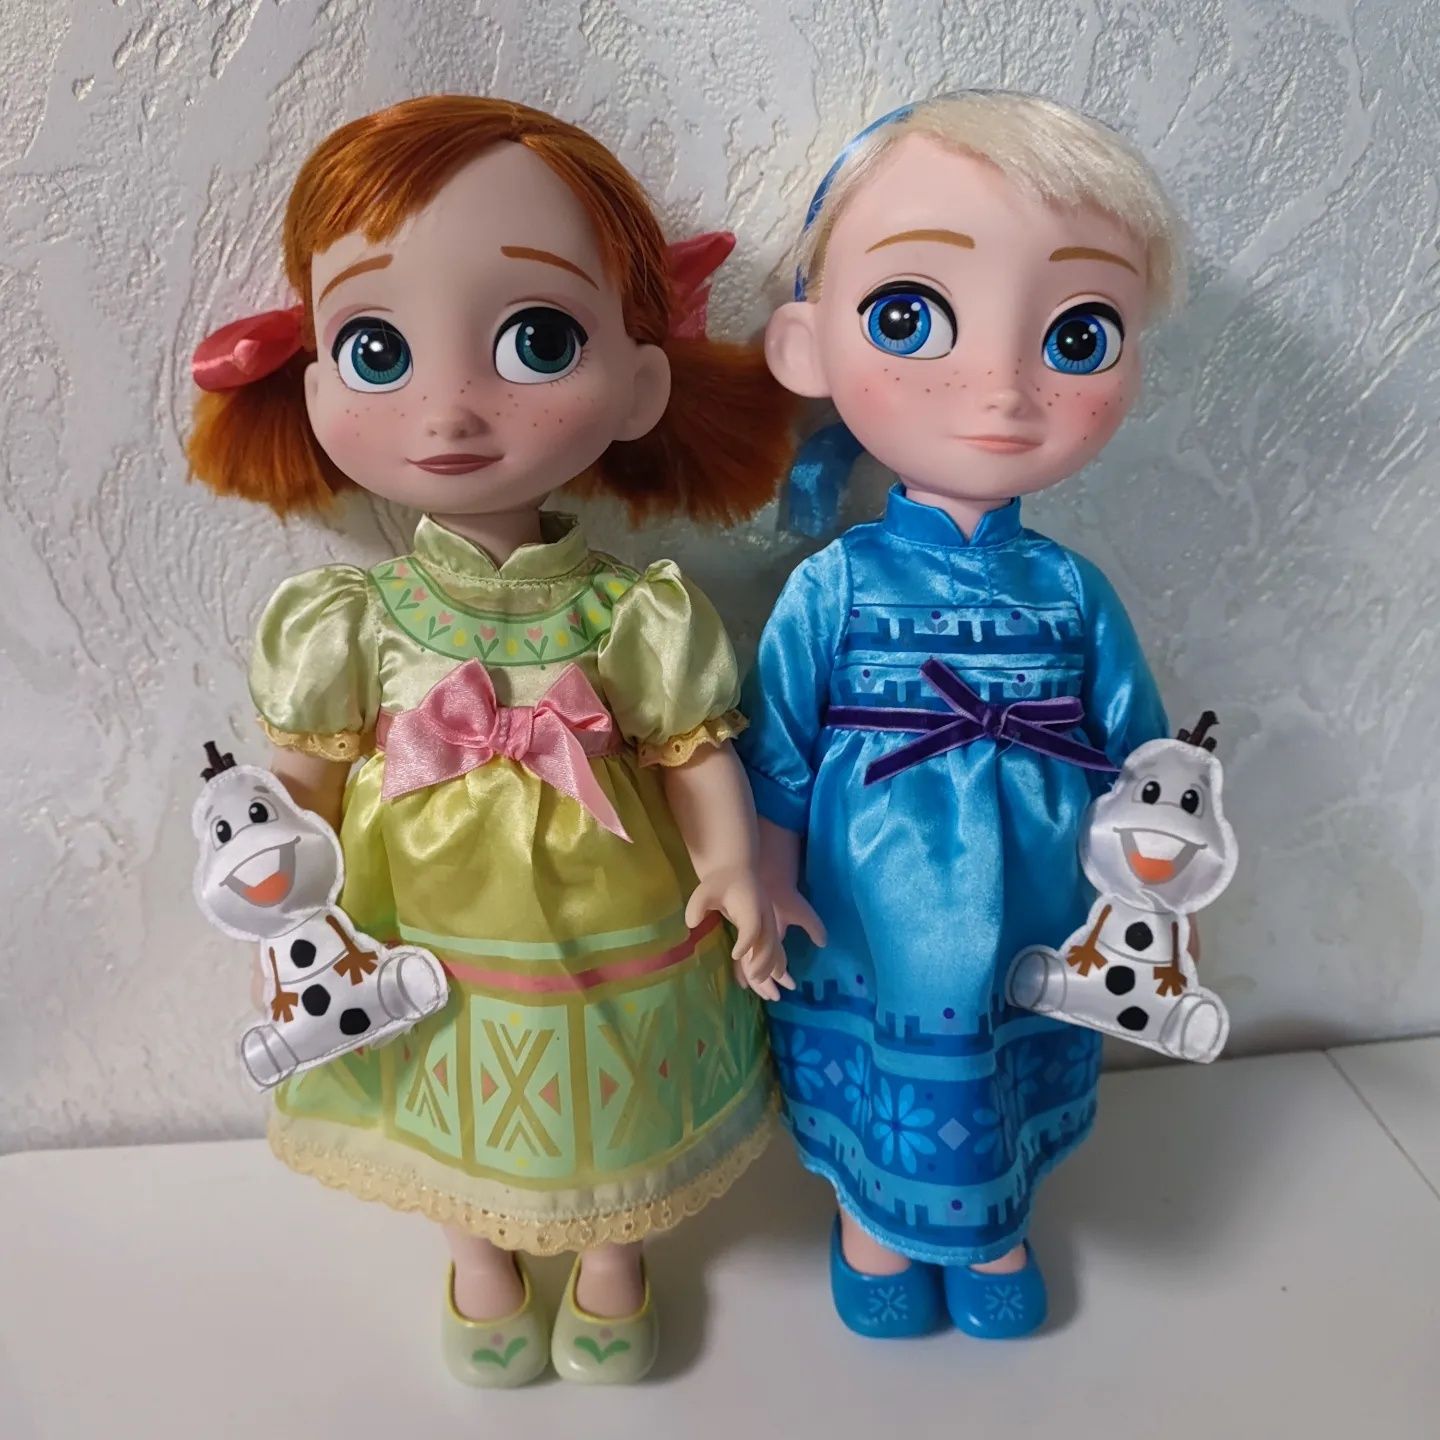 Лялька кукла дісней Анна Ельза крижане серце Frozen